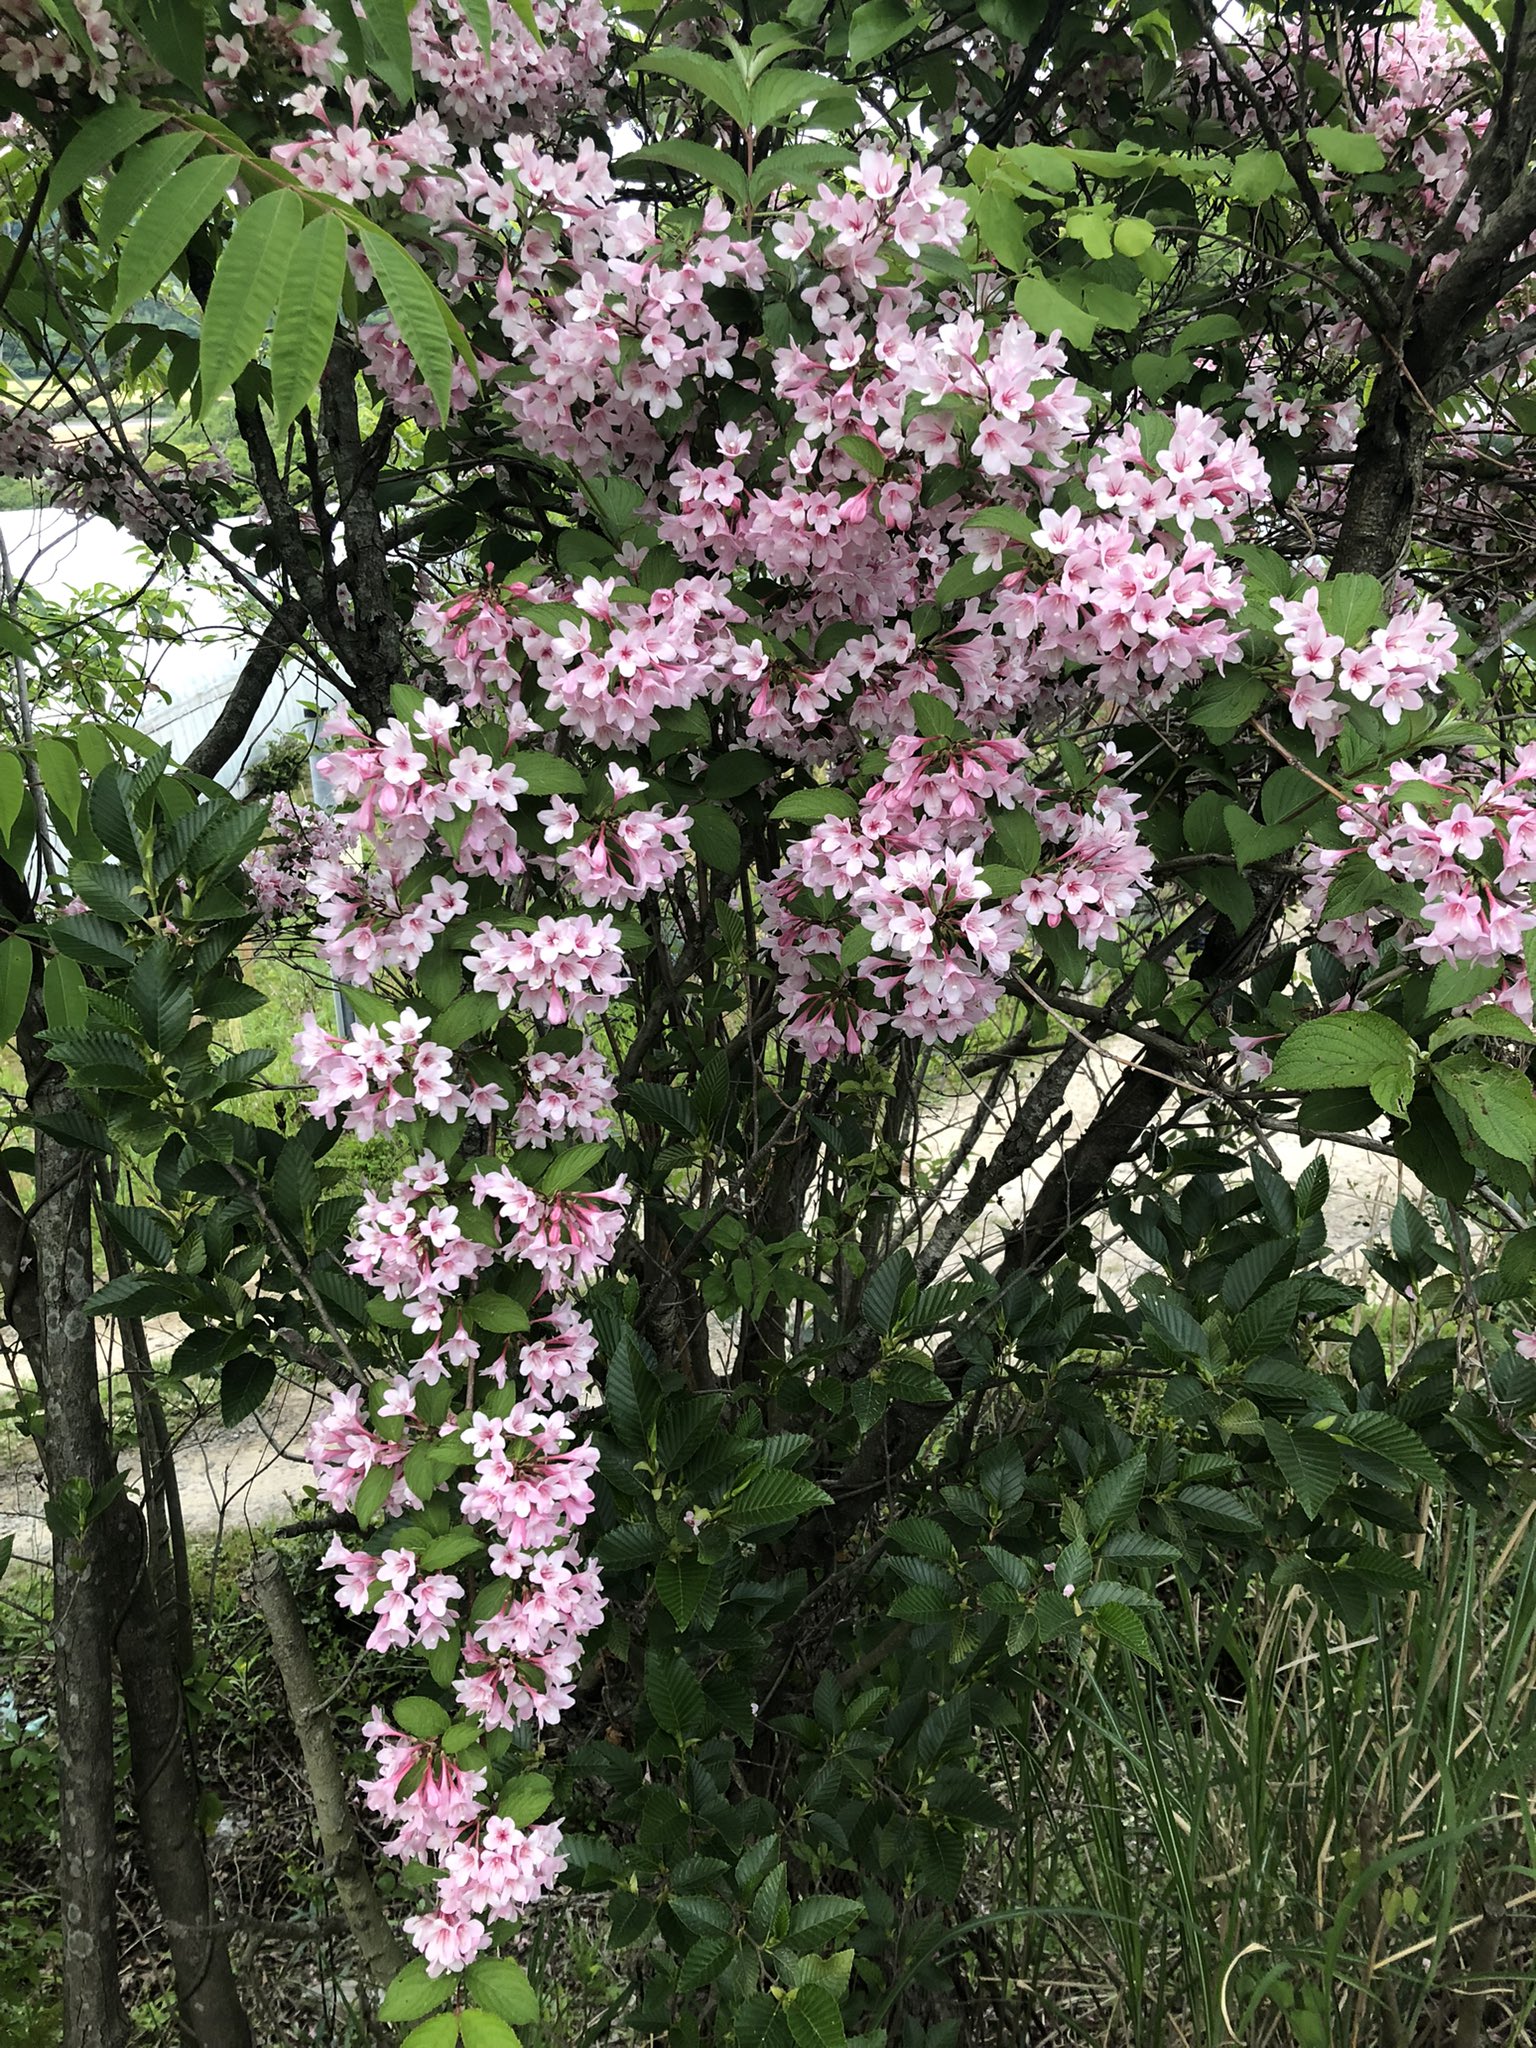 Tanfuku0522 プリンに続き今日のピンクなもの タニウツギ 谷空木 田植えの時期に咲くので 田植え花とも言うそう 花言葉は豊麗 5月31日の誕生花 辺り一面に咲くと 山火事のように見える事からか 彼岸花などと同じように 家に持ち込むことは忌み嫌われ